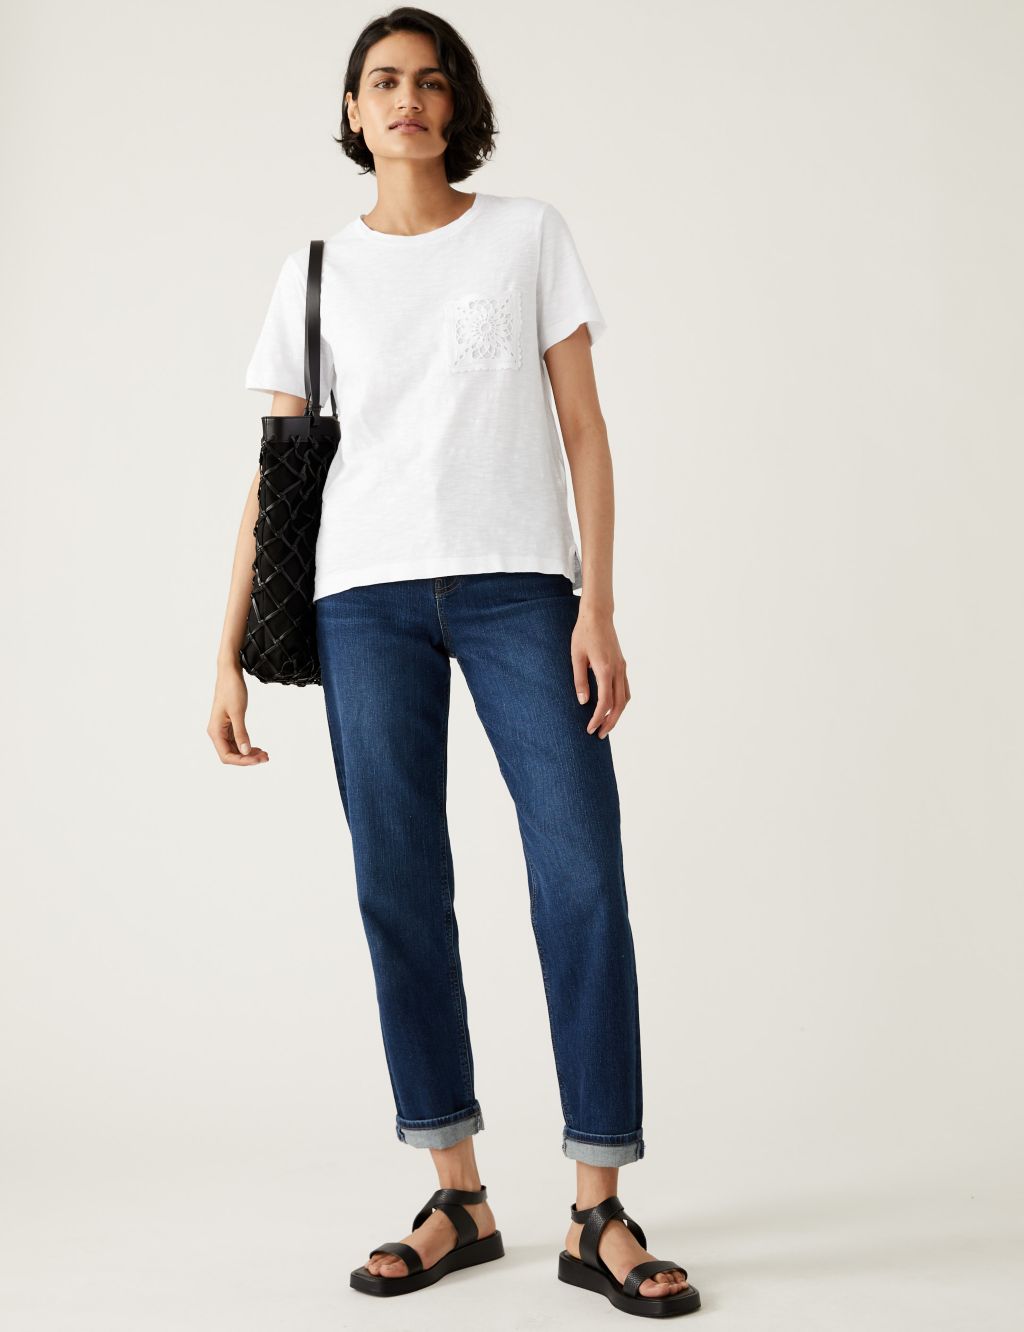 Pure Cotton Lace Pocket T-Shirt image 2